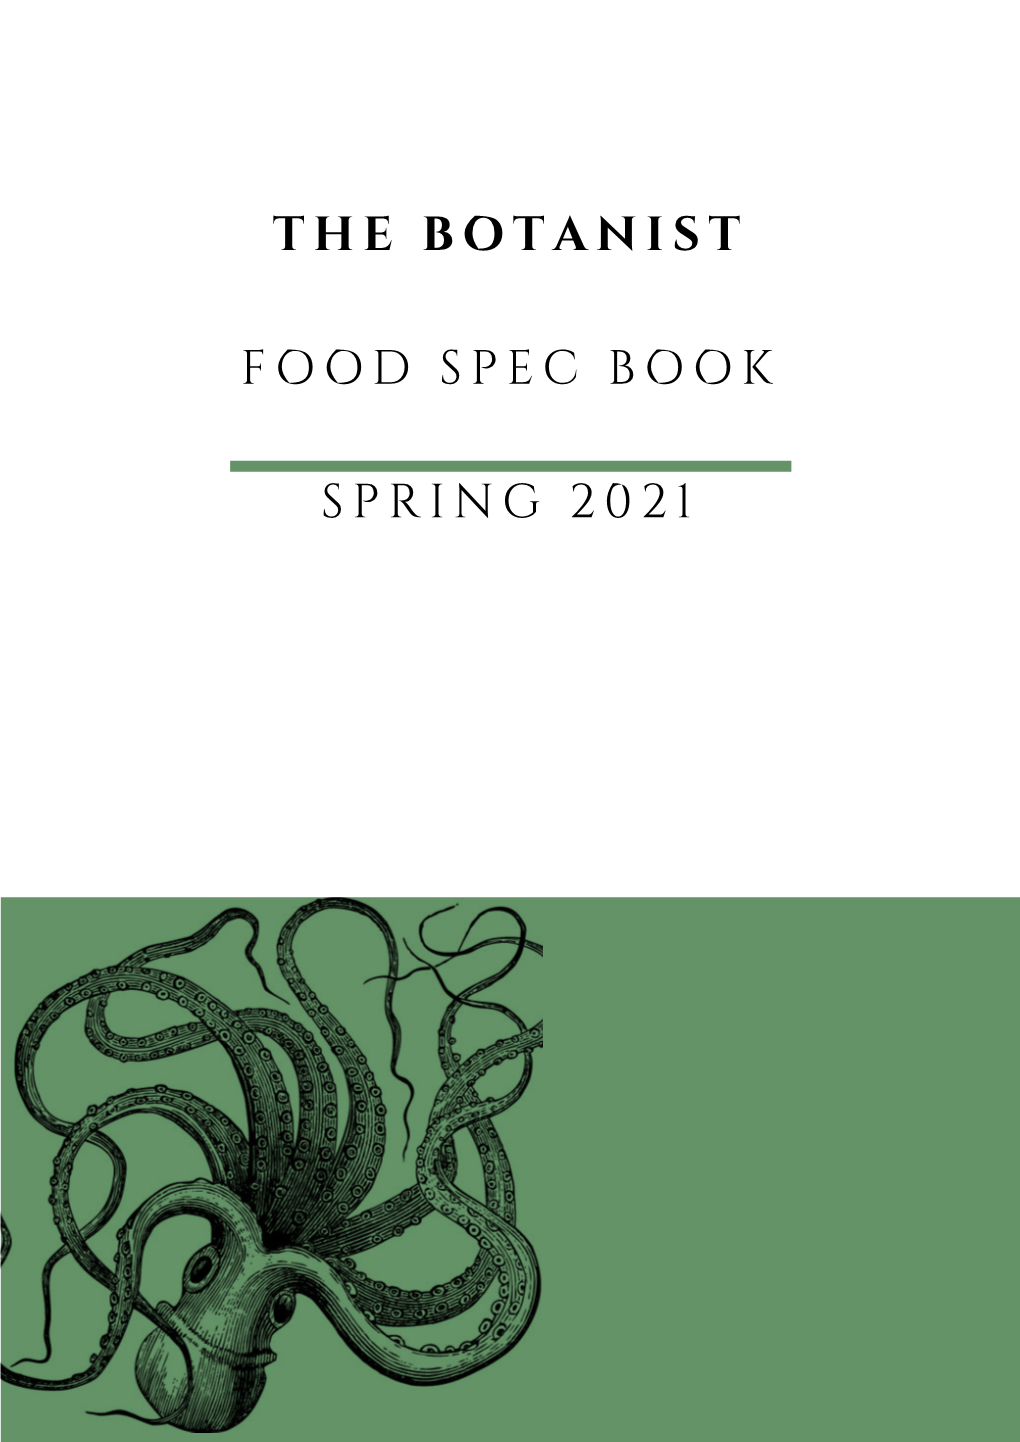 The Botanist Food Spec Book Spring 2021